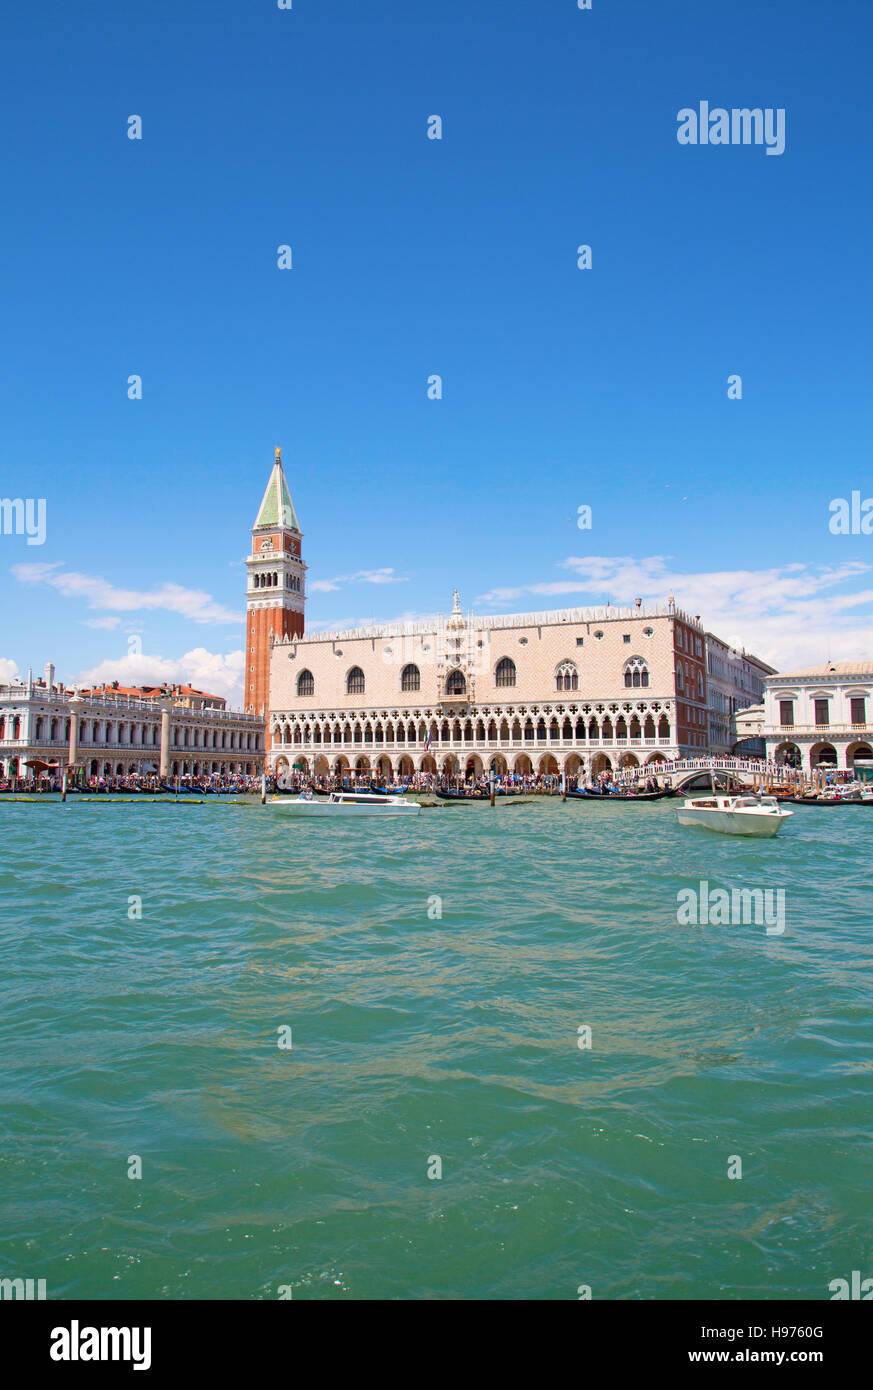 Fassade der Dogenpalast in Venedig, Italien Stockfoto